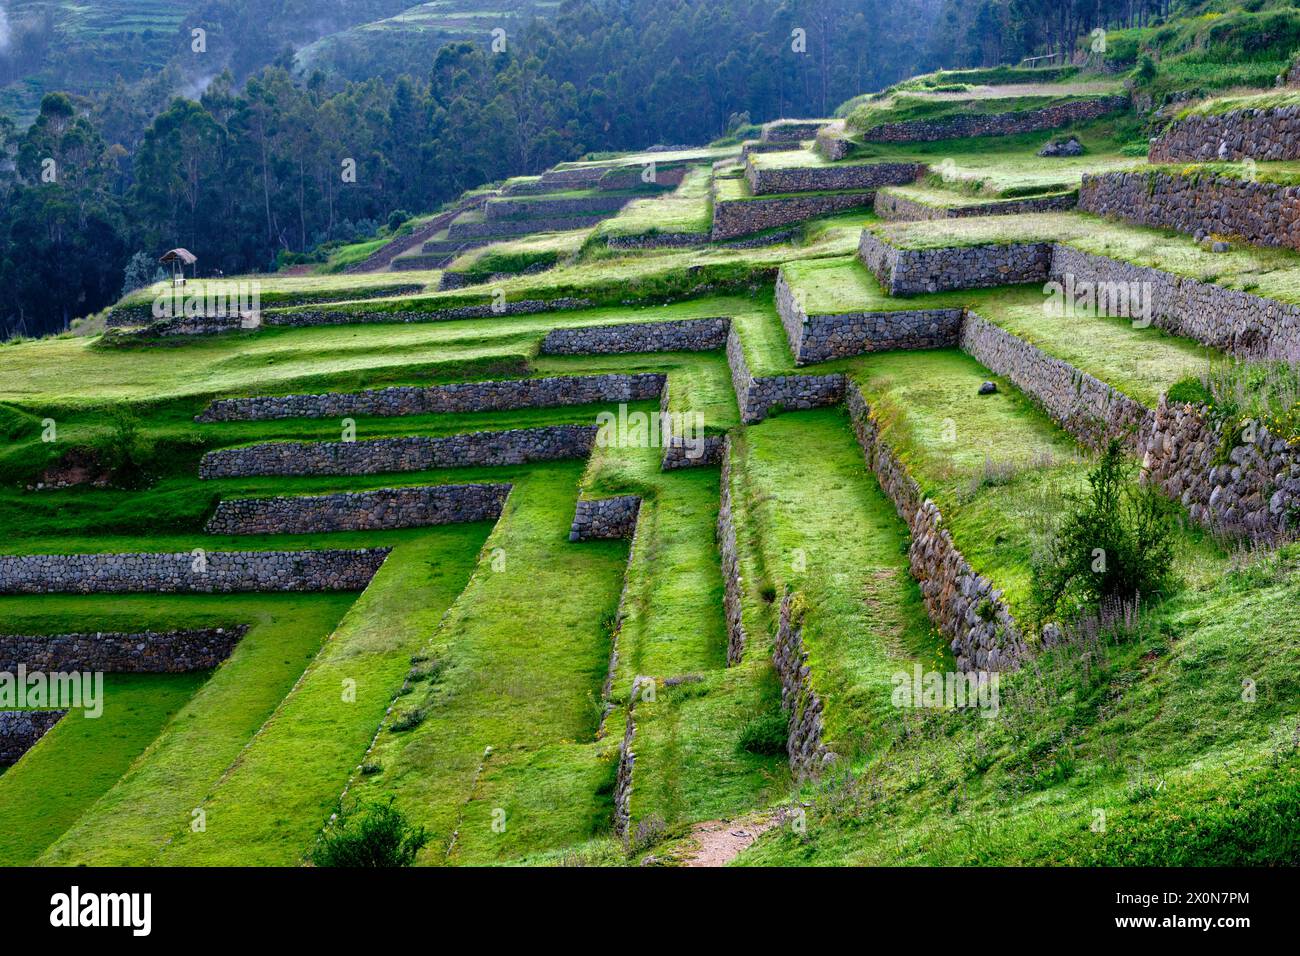 Pérou, province de Cuzco, la Vallée sacrée des Incas, Chinchero, le village espagnol construit sur les vestiges des terrasses inca Banque D'Images